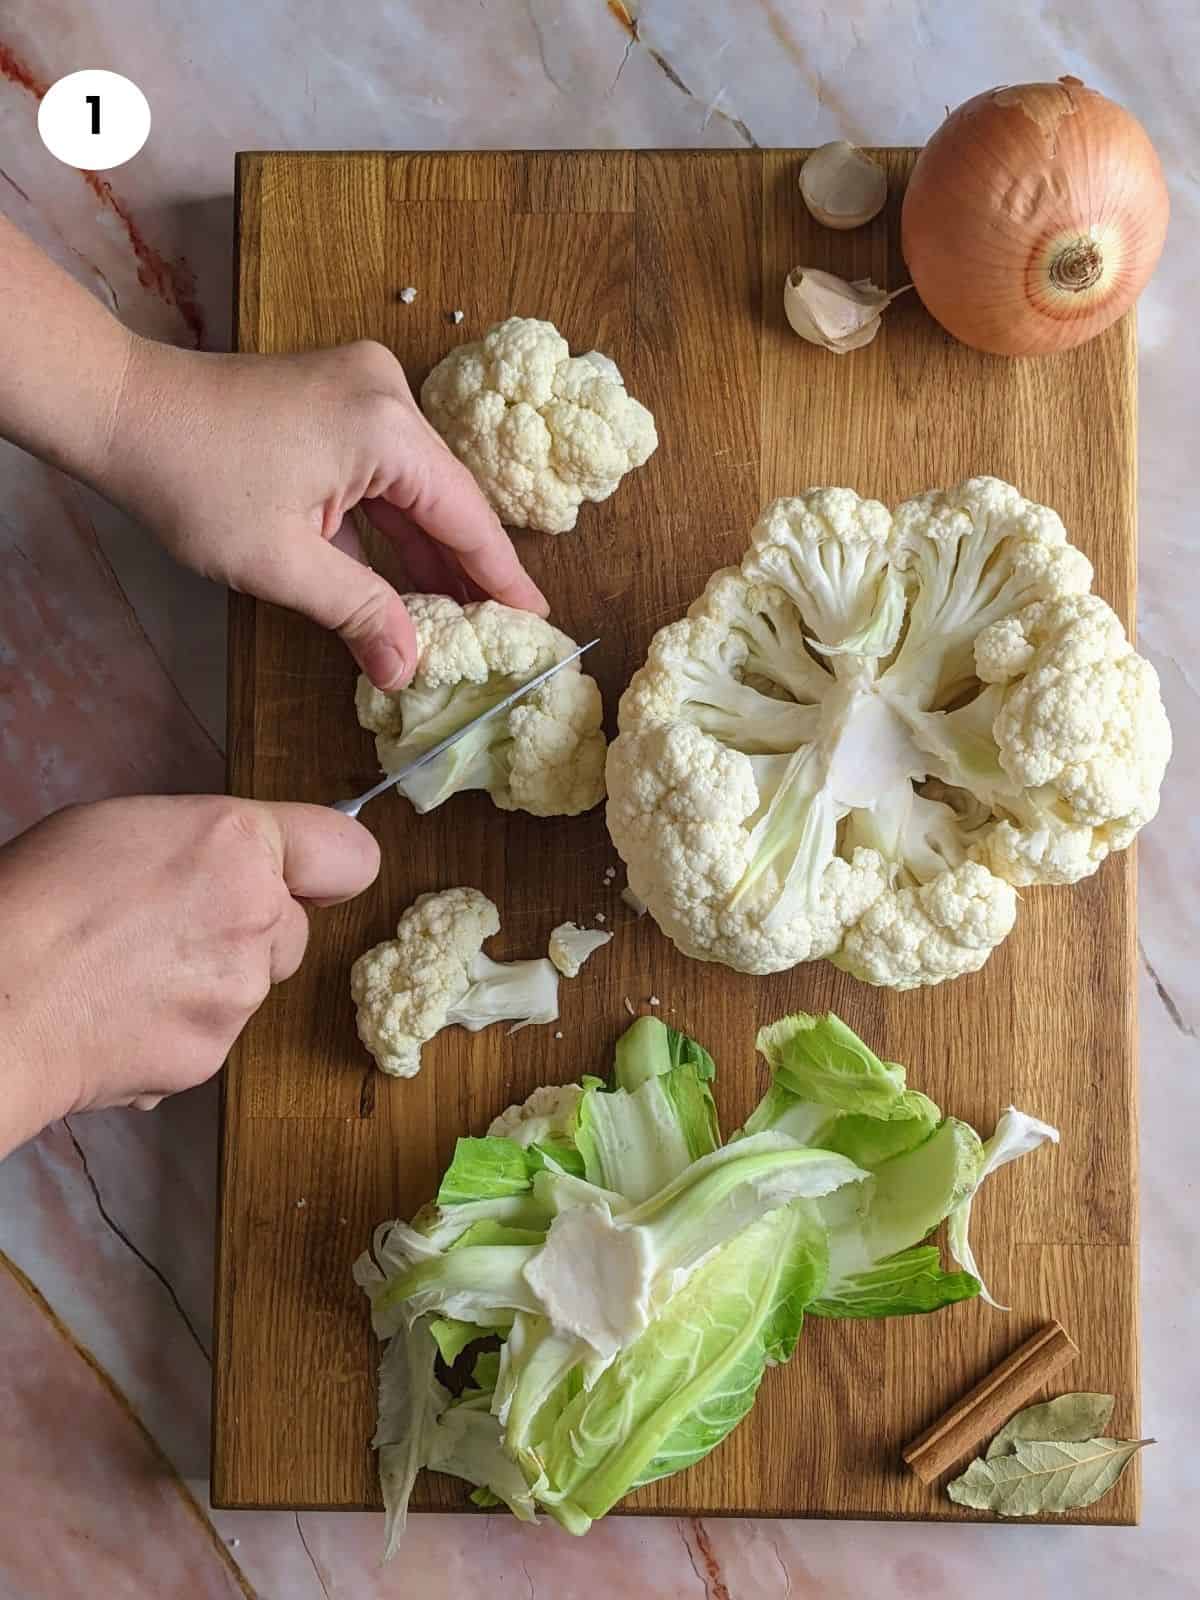 Cutting cauliflower head into florets.